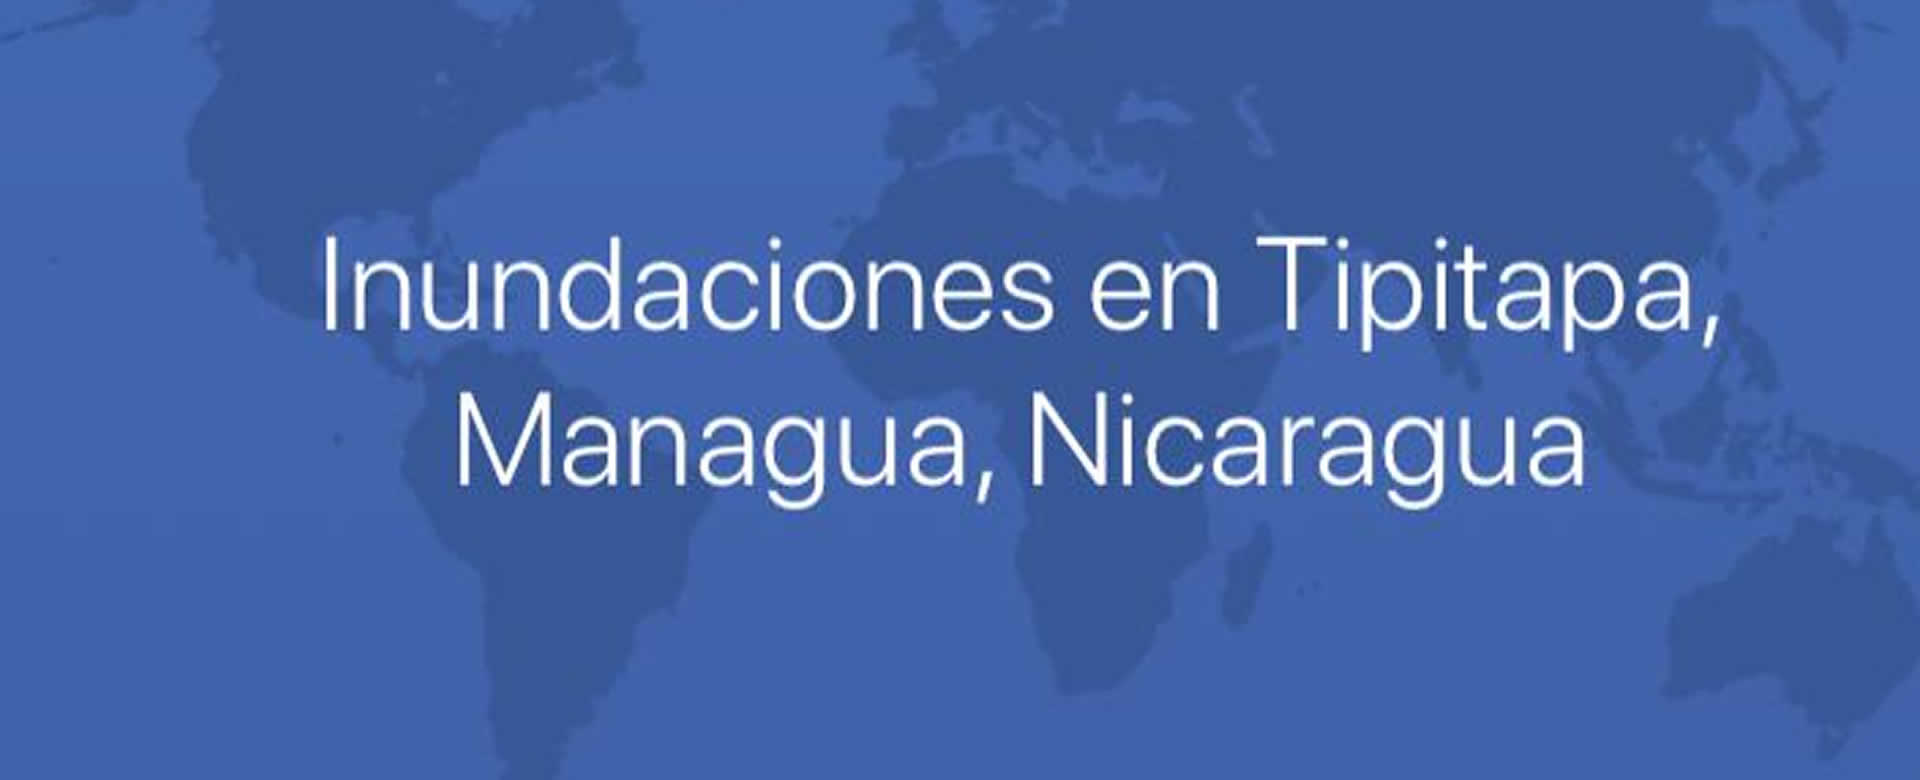 Facebook activa estado de emergencia por inundaciones en Tipitapa, Nicaragua